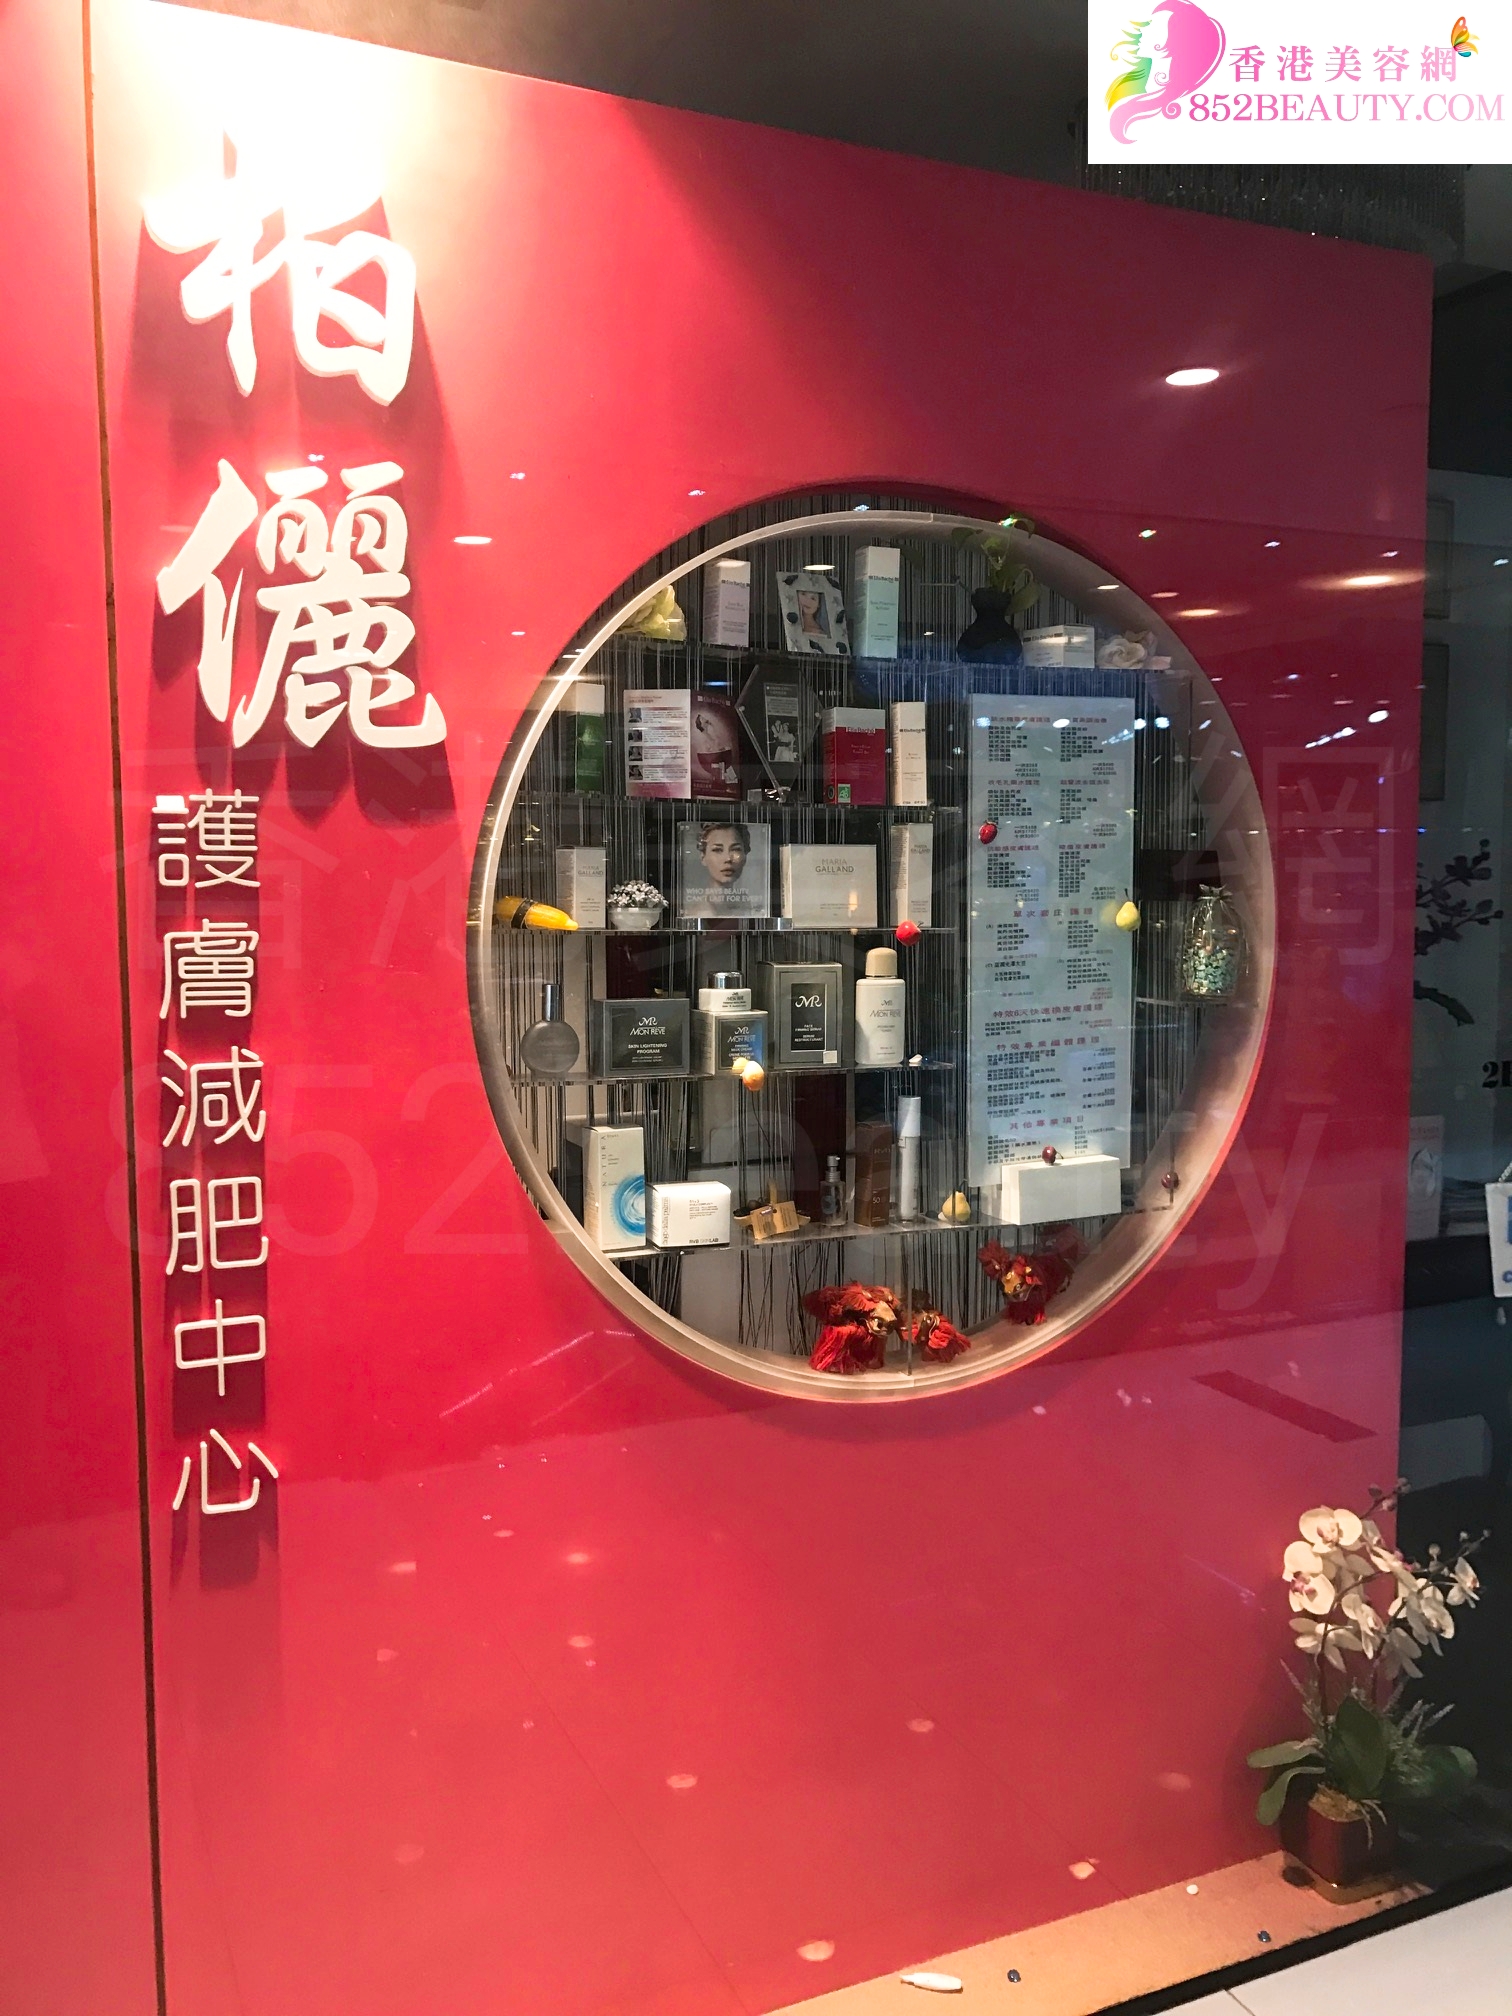 香港美容網 Hong Kong Beauty Salon 美容院 / 美容師: 柏麗護膚減肥中心